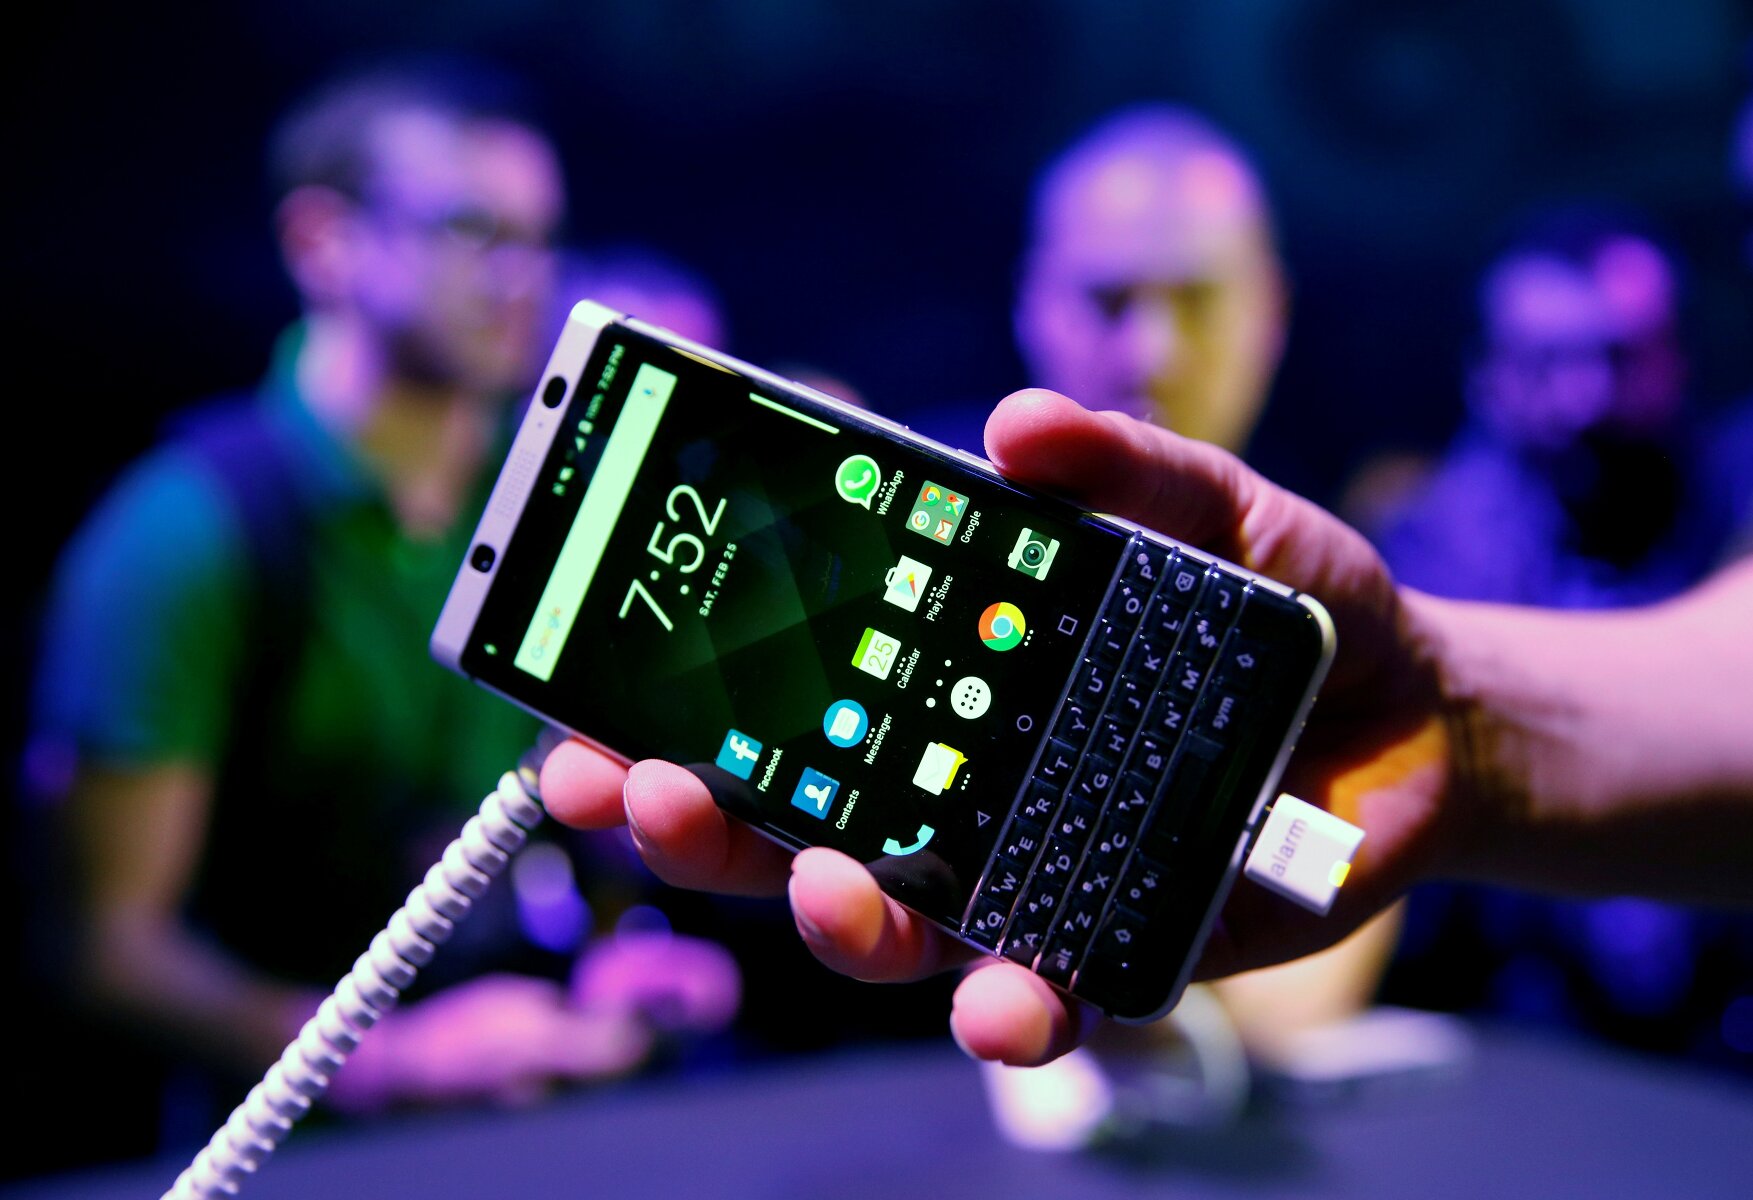 <p><strong>BlackBerry KeyOne</strong></p>

<p>Компания TCL Communication, которая выпускает телефоны BlackBerry, представила новую модель KeyOne. Разработчики объединили клавиатуру QWERTY с 4.5-дюймовым сенсорным дисплеем. Клавиатура представляет собой тачпад со встроенным сканером отпечатков пальцев. У кнопок также появился дополнительный функционал: можно, например, нажать &laquo;Y&raquo;, чтобы запустить YouTube, или &laquo;F&raquo; для фейсбука. Телефон&nbsp;также оснащен 12-мегапиксельной камерой и процессором Qualcomm, а работает он, в отличие от предшественников, на операционной система Andorid. Продажи начнутся в апреле, стоить телефон будет $550&nbsp;в США и &euro;600 в Европе.&nbsp;</p>